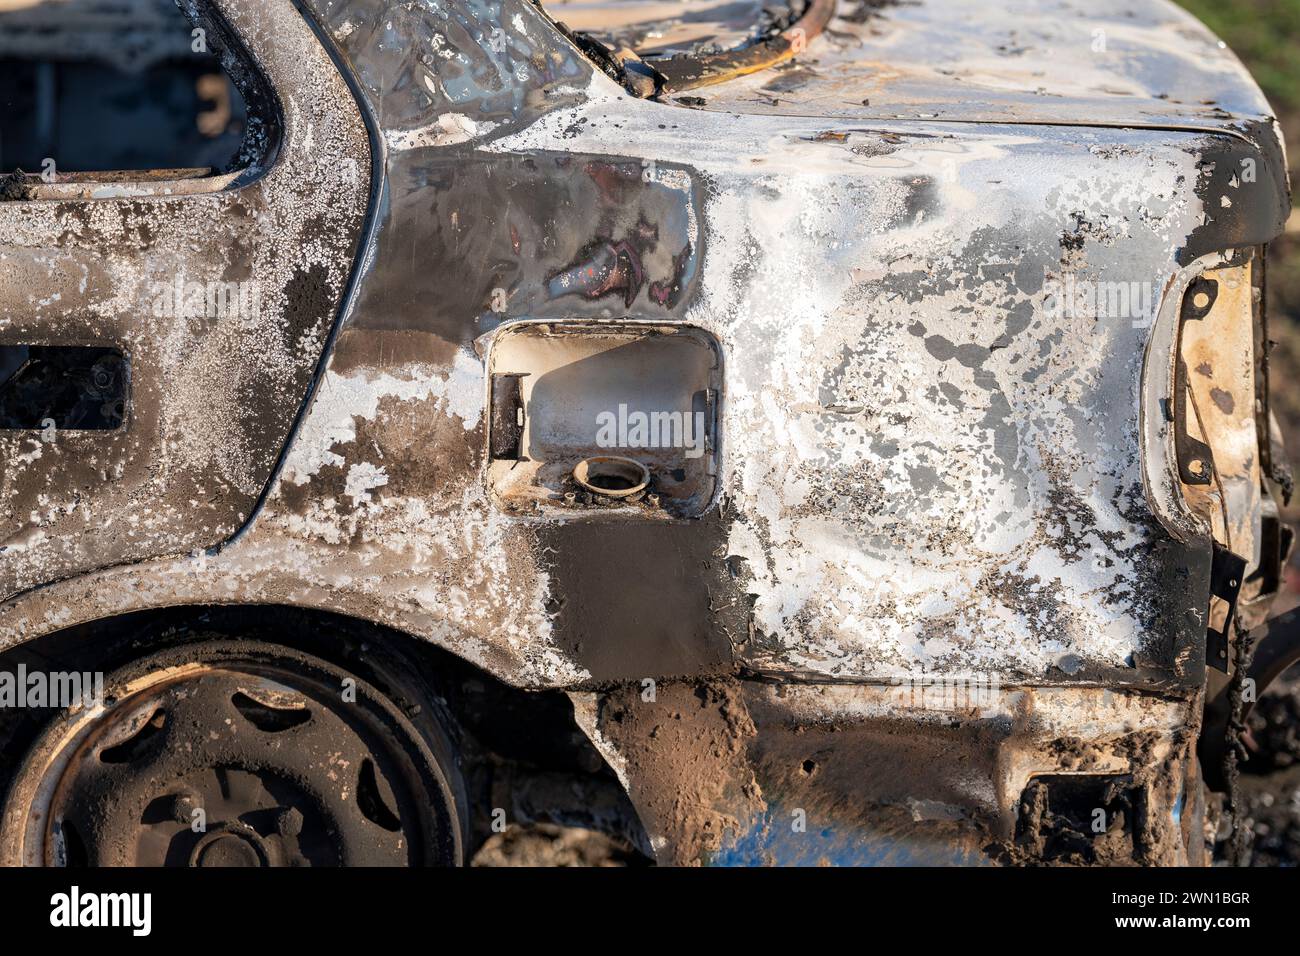 Ein ausgebranntes Auto. Verbranntes Auto auf dem Feld. Fahrzeugbrand, Fahrzeugbrand aufgrund eines Kurzschlusses. Absichtliche Brandstiftung des gestohlenen Autos. Stockfoto